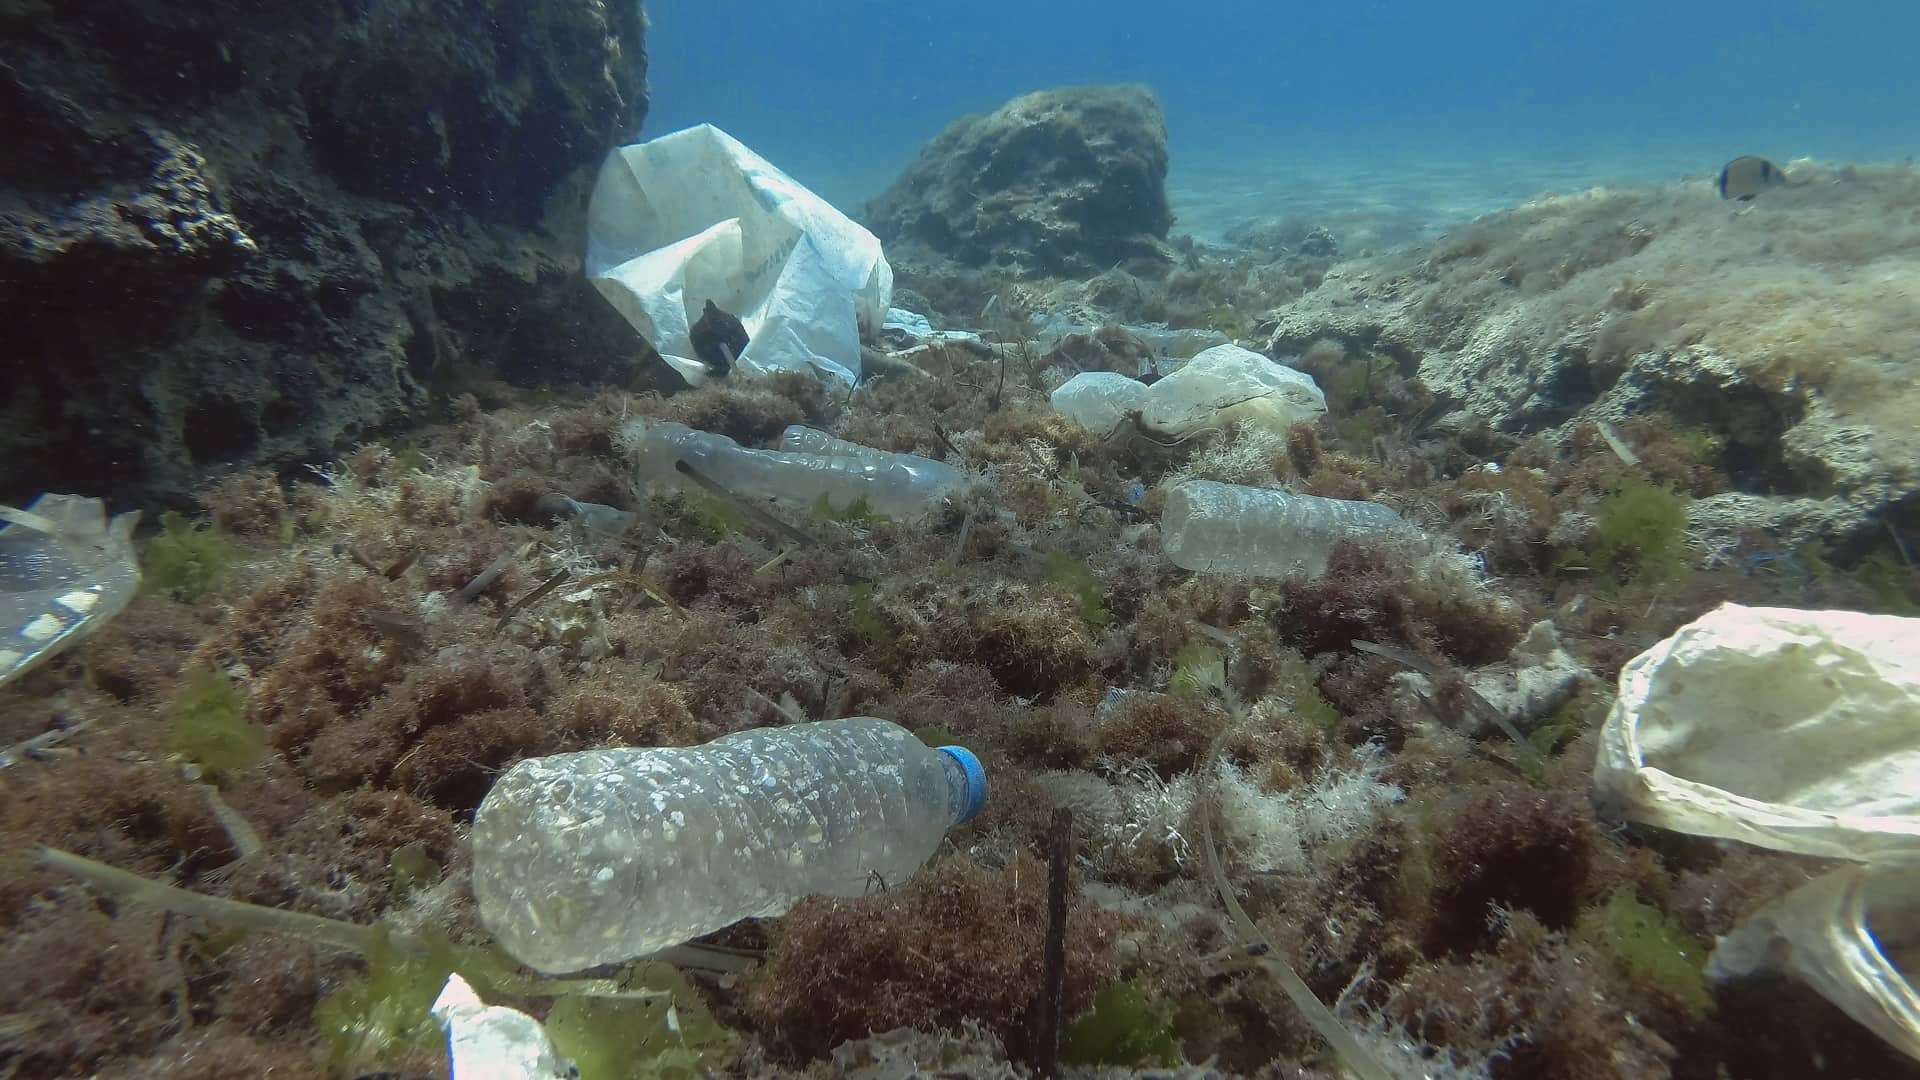 Plastic polluting the ocean